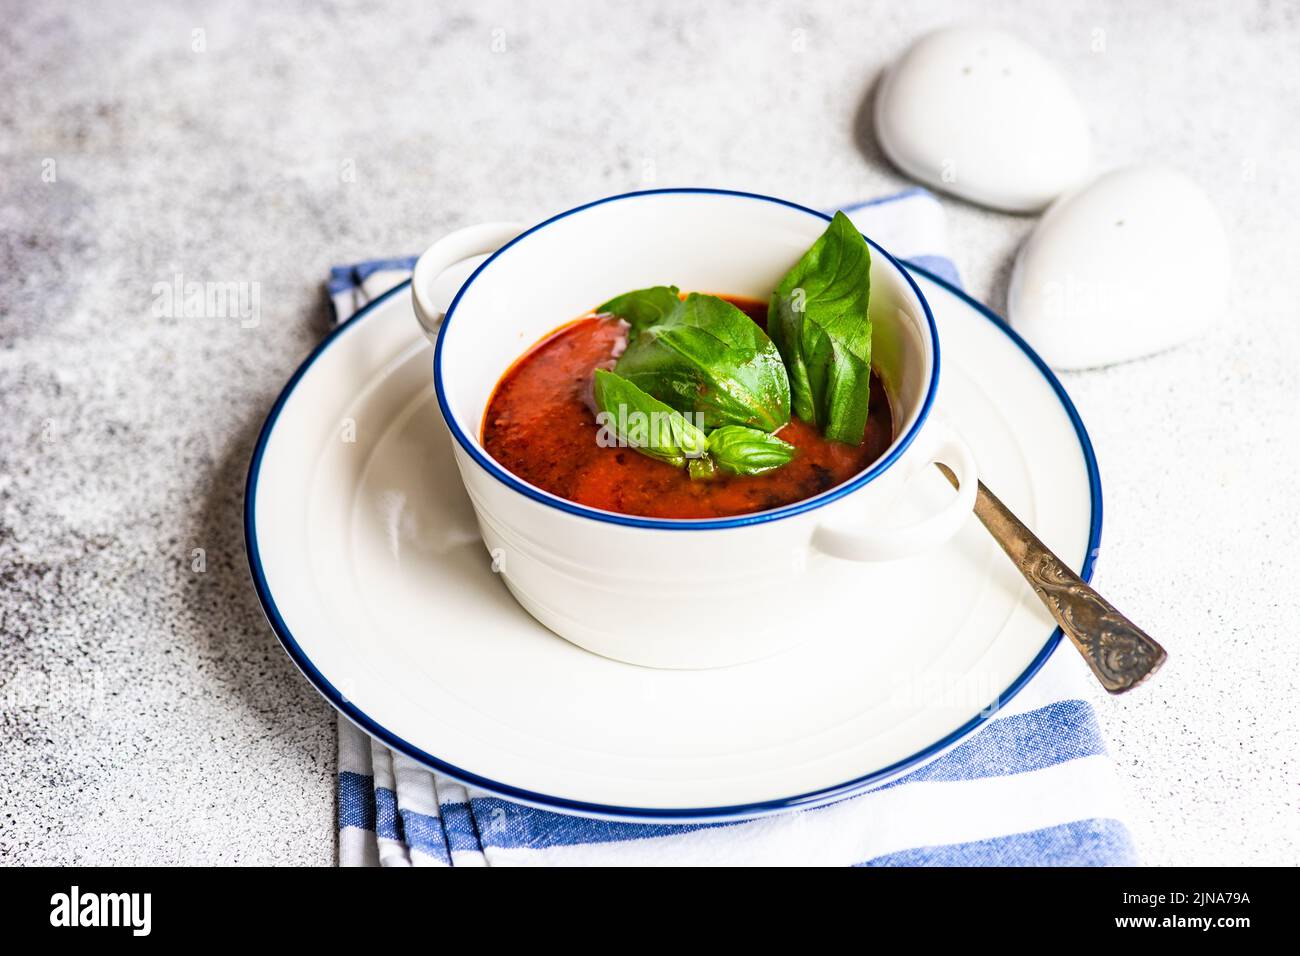 Se sirve sopa de gazpacho español sobre fondo rústico con espacio para copiar Foto de stock